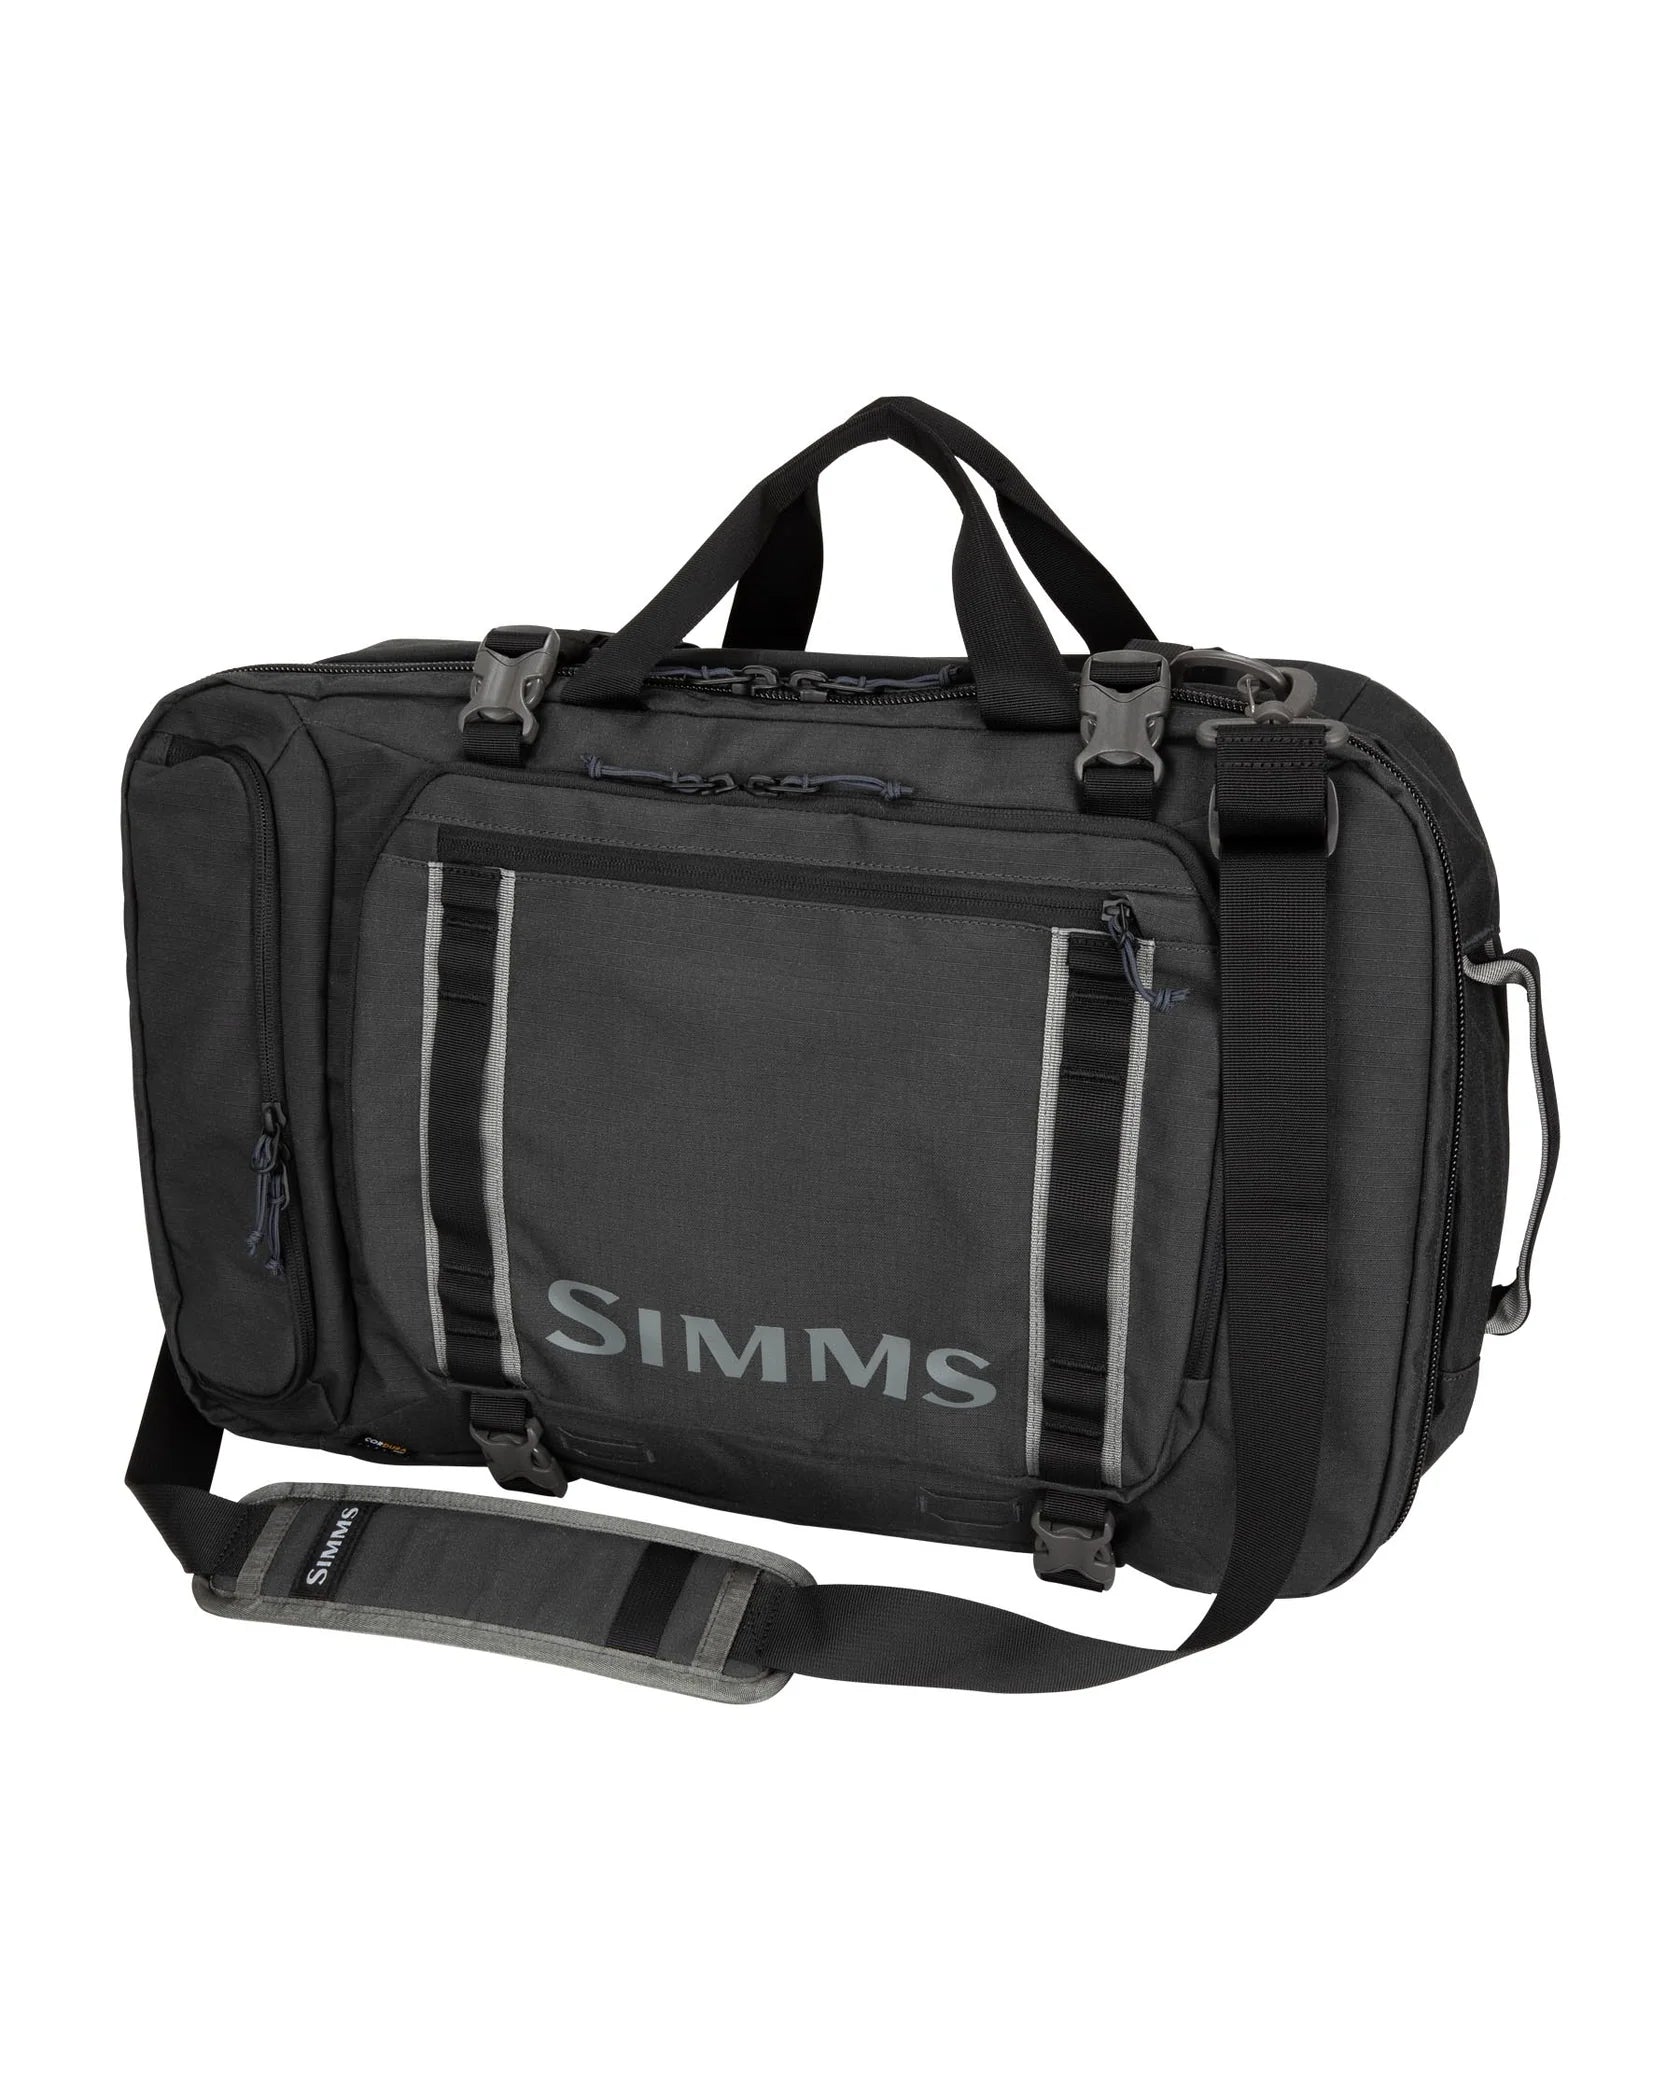 Simms GTS Tri-Carry Duffel - 45L